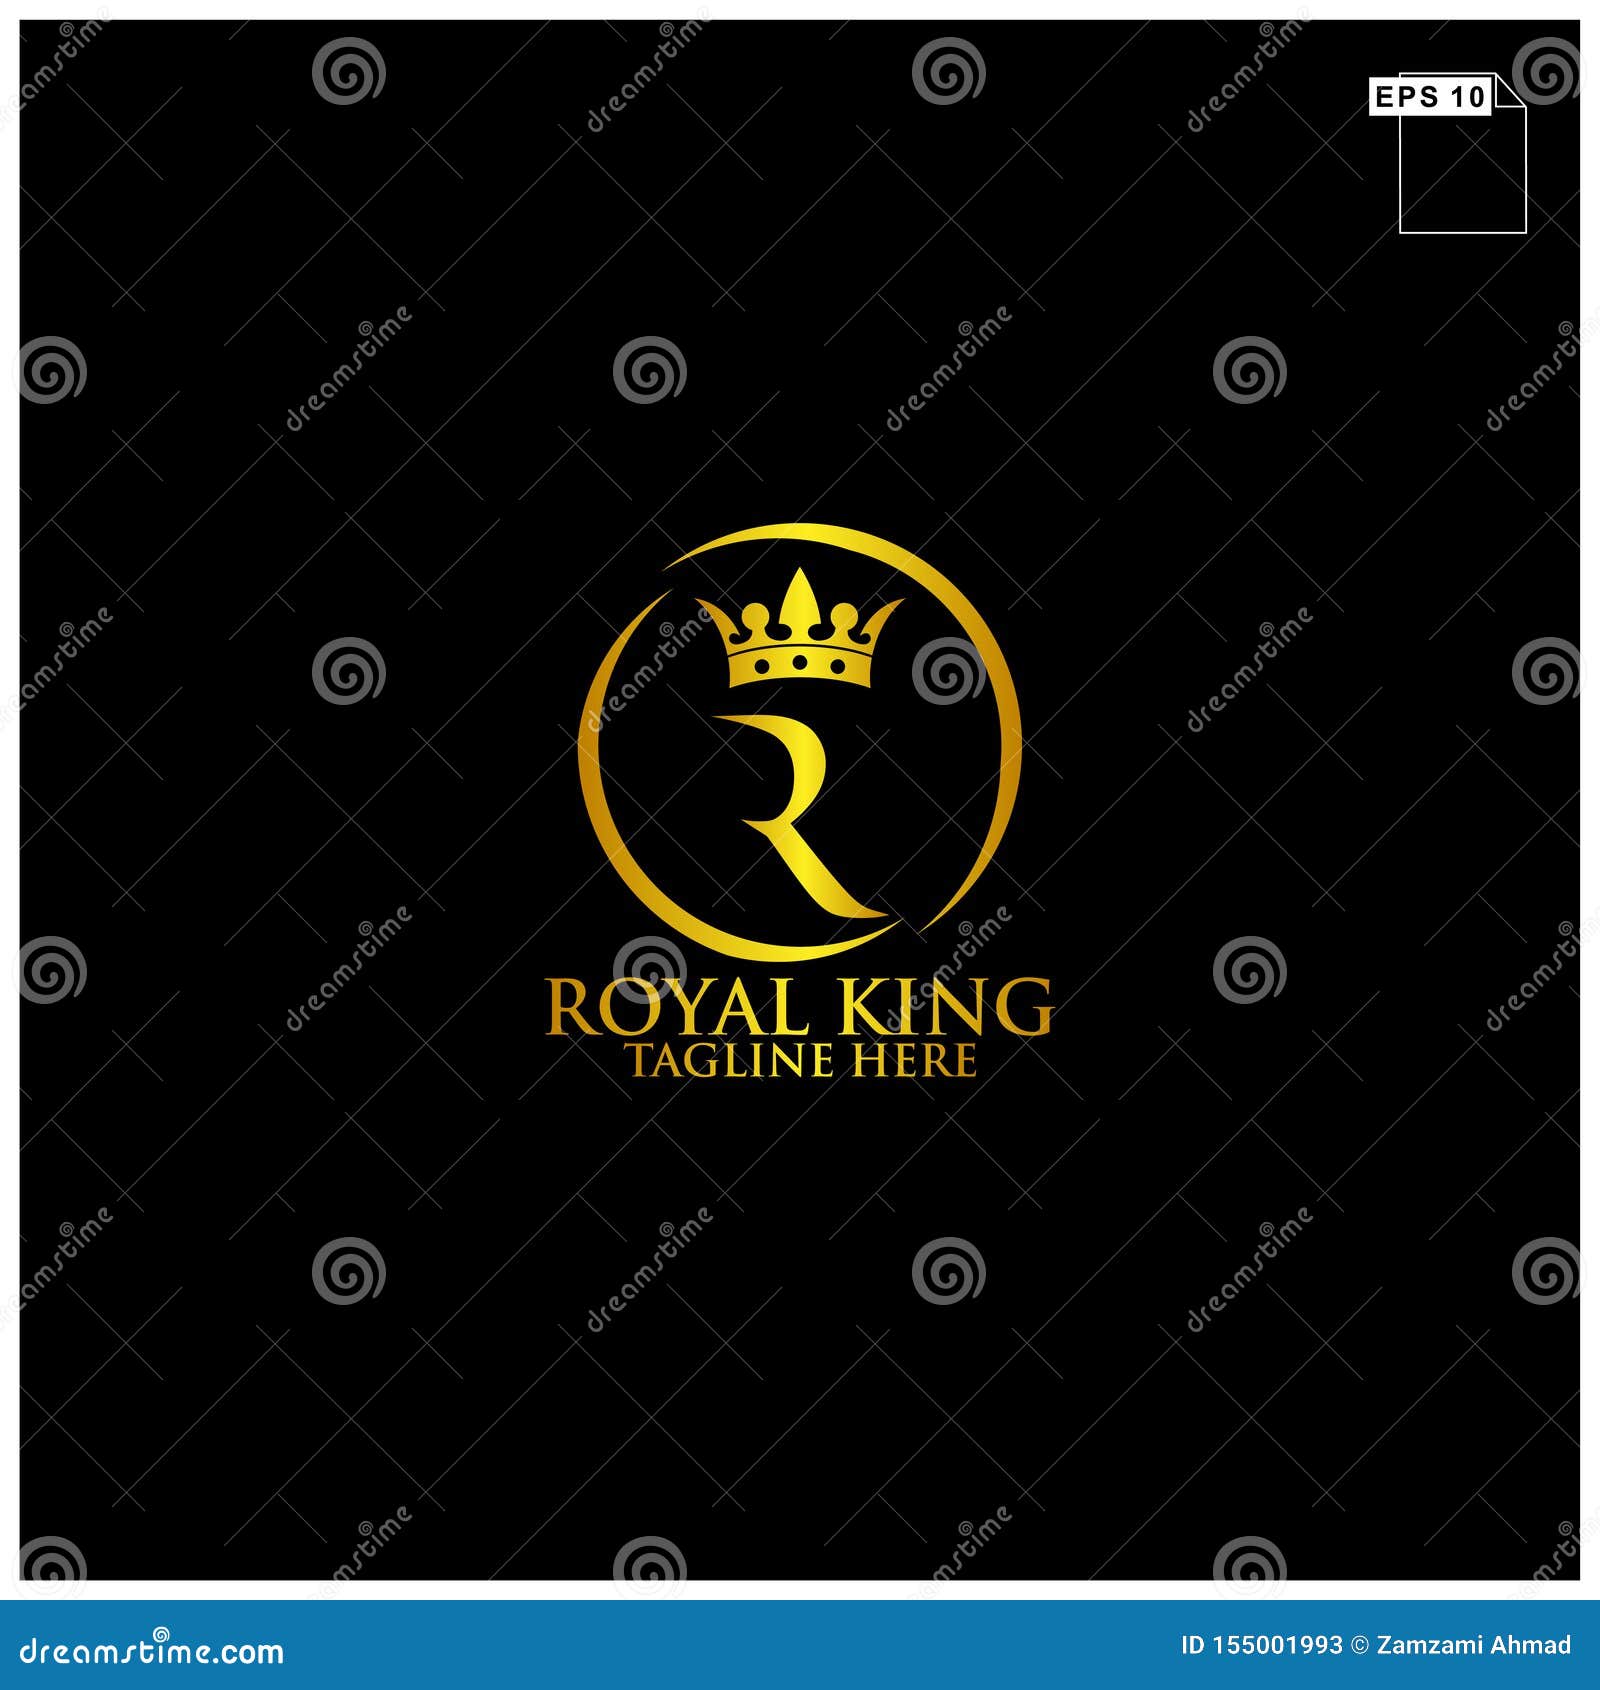 Thiết kế logo Hoàng gia sẽ làm bạn liên tưởng đến những giá trị cao quý, uy nghiêm và sự trang trọng. Hãy xem hình ảnh liên quan để khám phá sự tinh tế và đẳng cấp của thiết kế này.